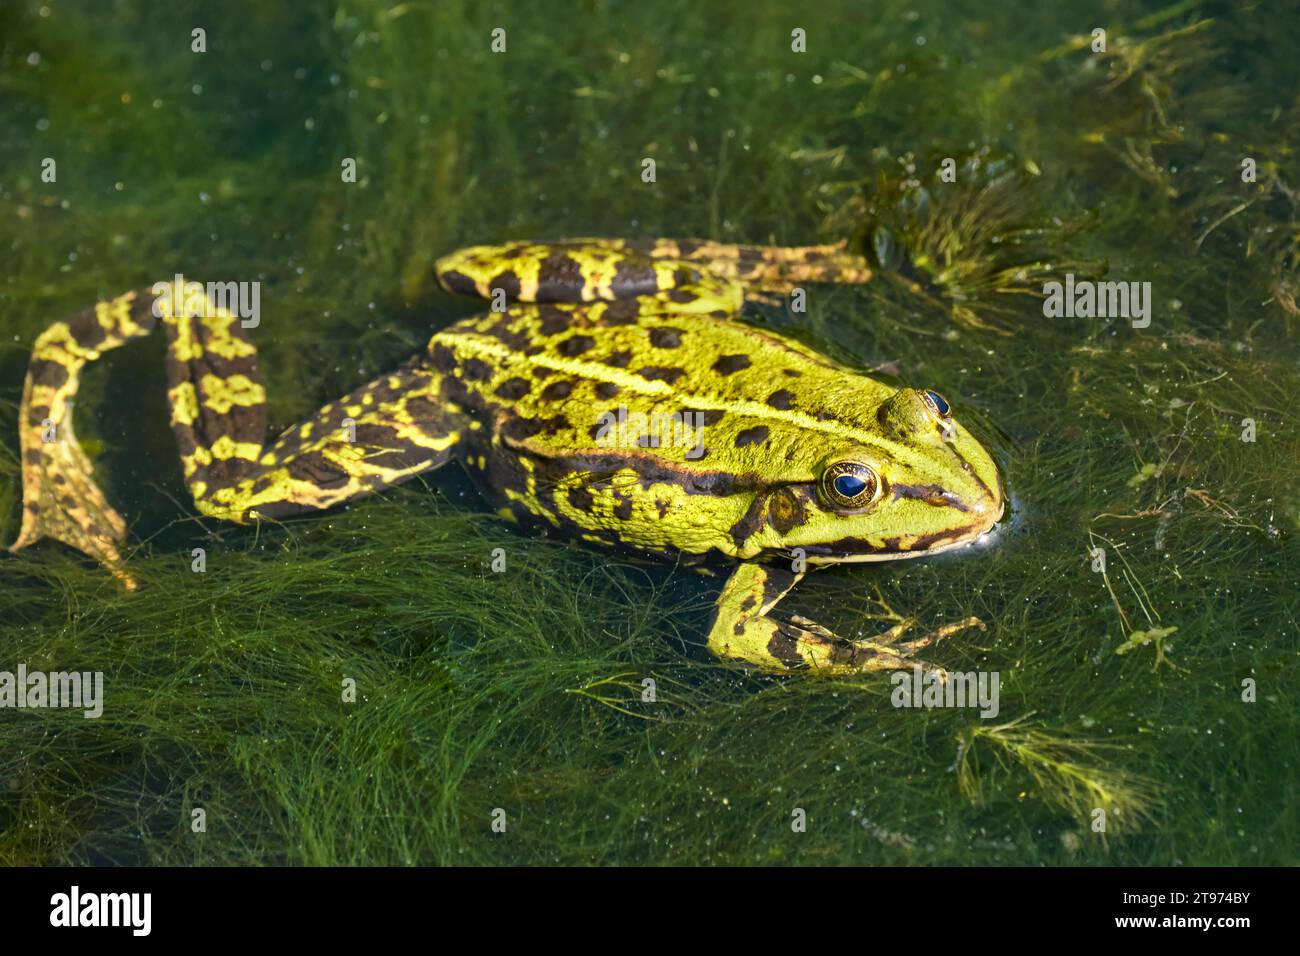 Frosch mit einem winkligen Bein im Wasser mit dickem Seegras - gemeiner Wasserfrosch Stockfoto